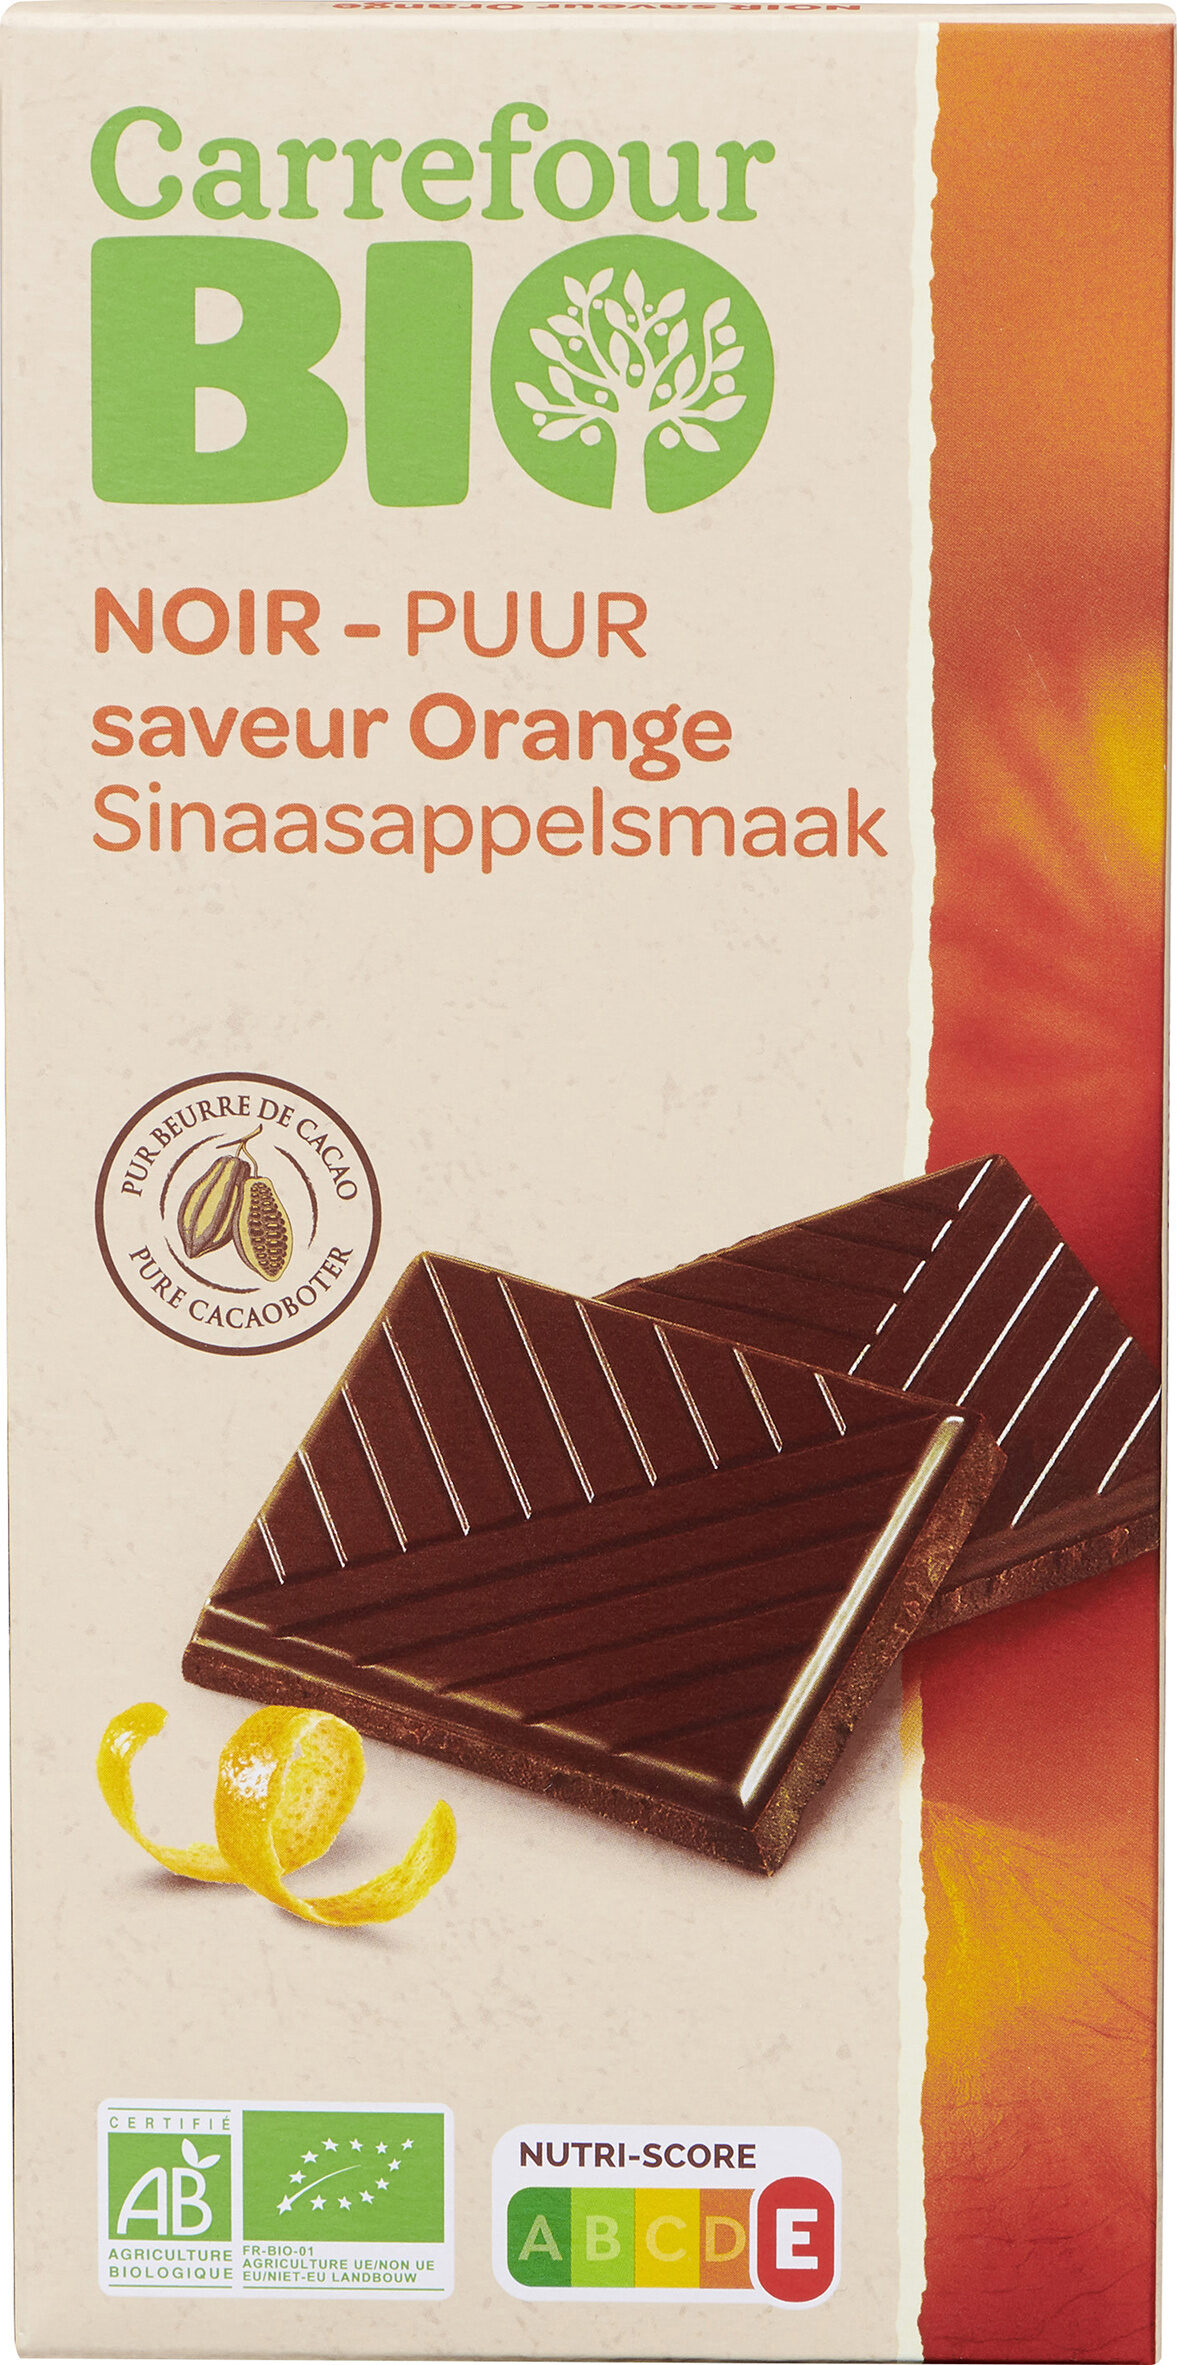 NOIR saveur Orange - Producte - fr